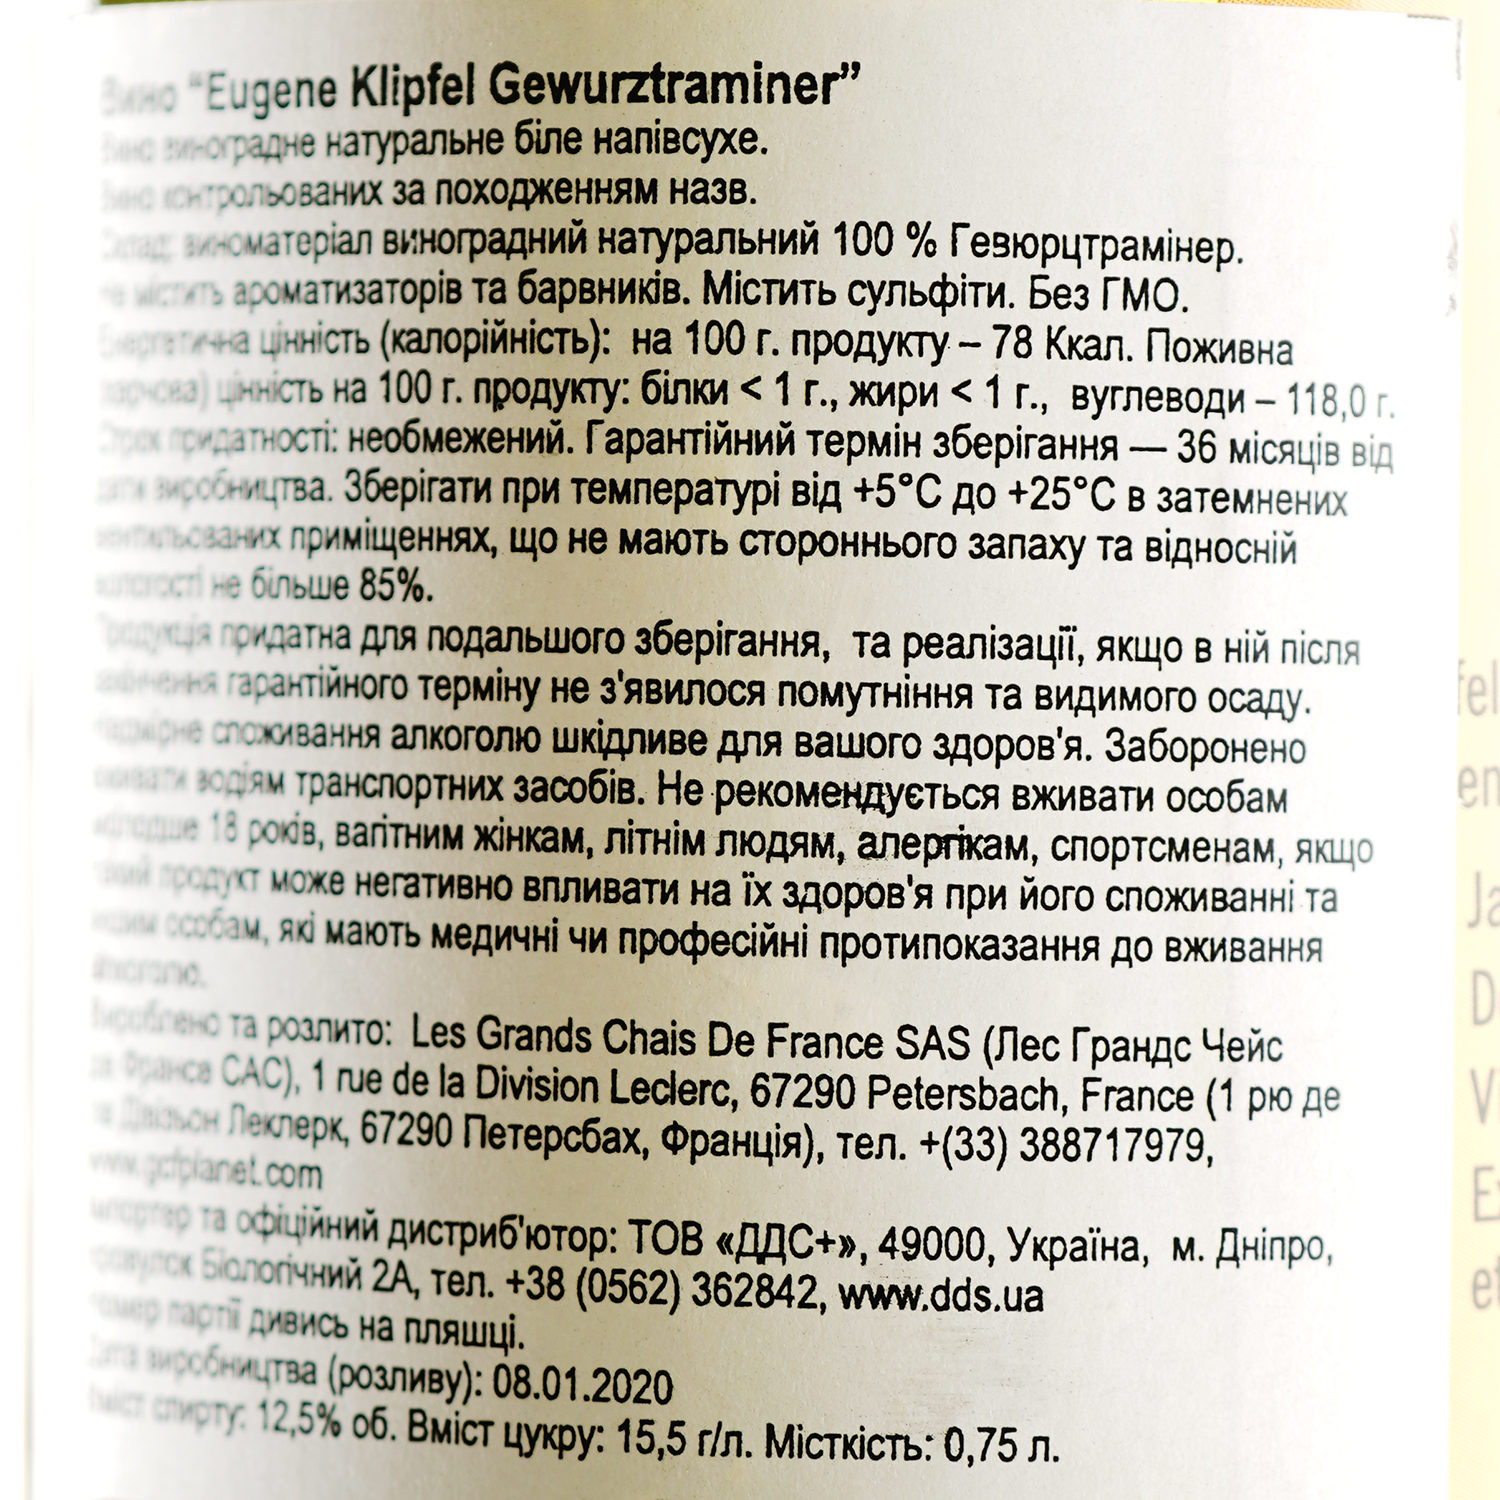 Вино Eugene Klipfel Gewurztraminer, біле, напівсухе, 12,5%, 0,75 л - фото 3